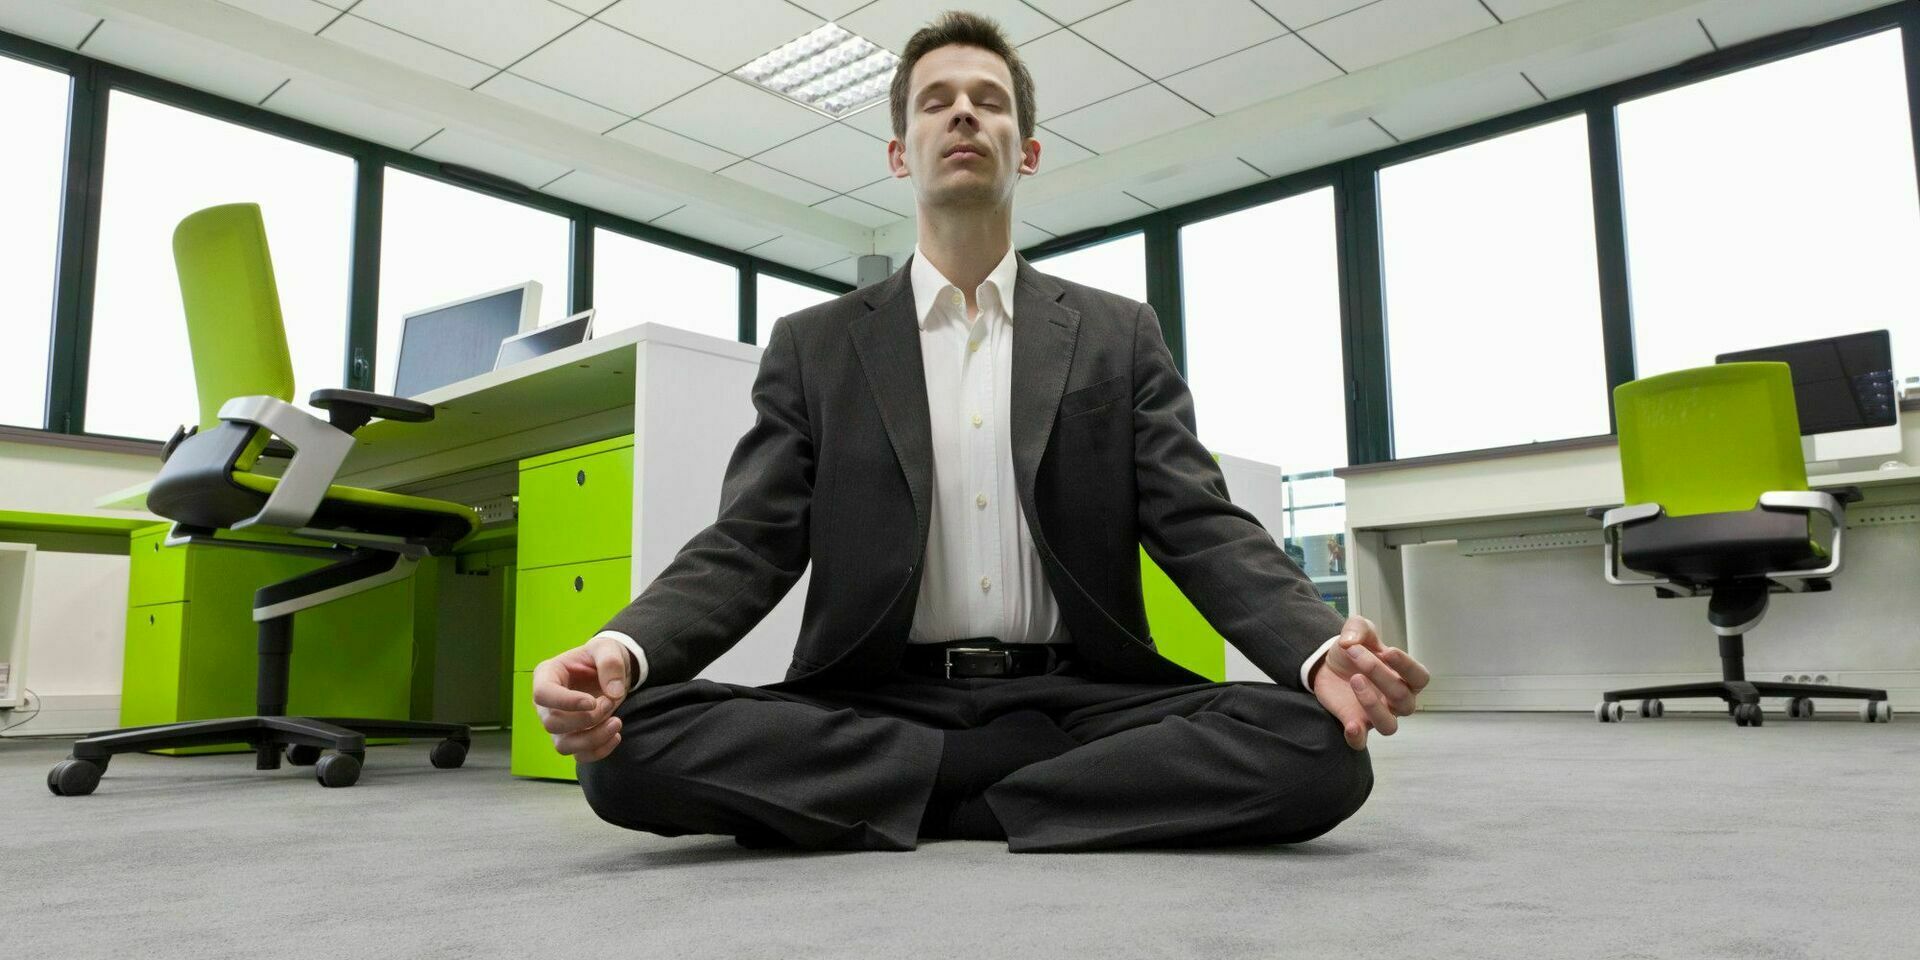 Кардиологи: медитация лечит практически от всего!